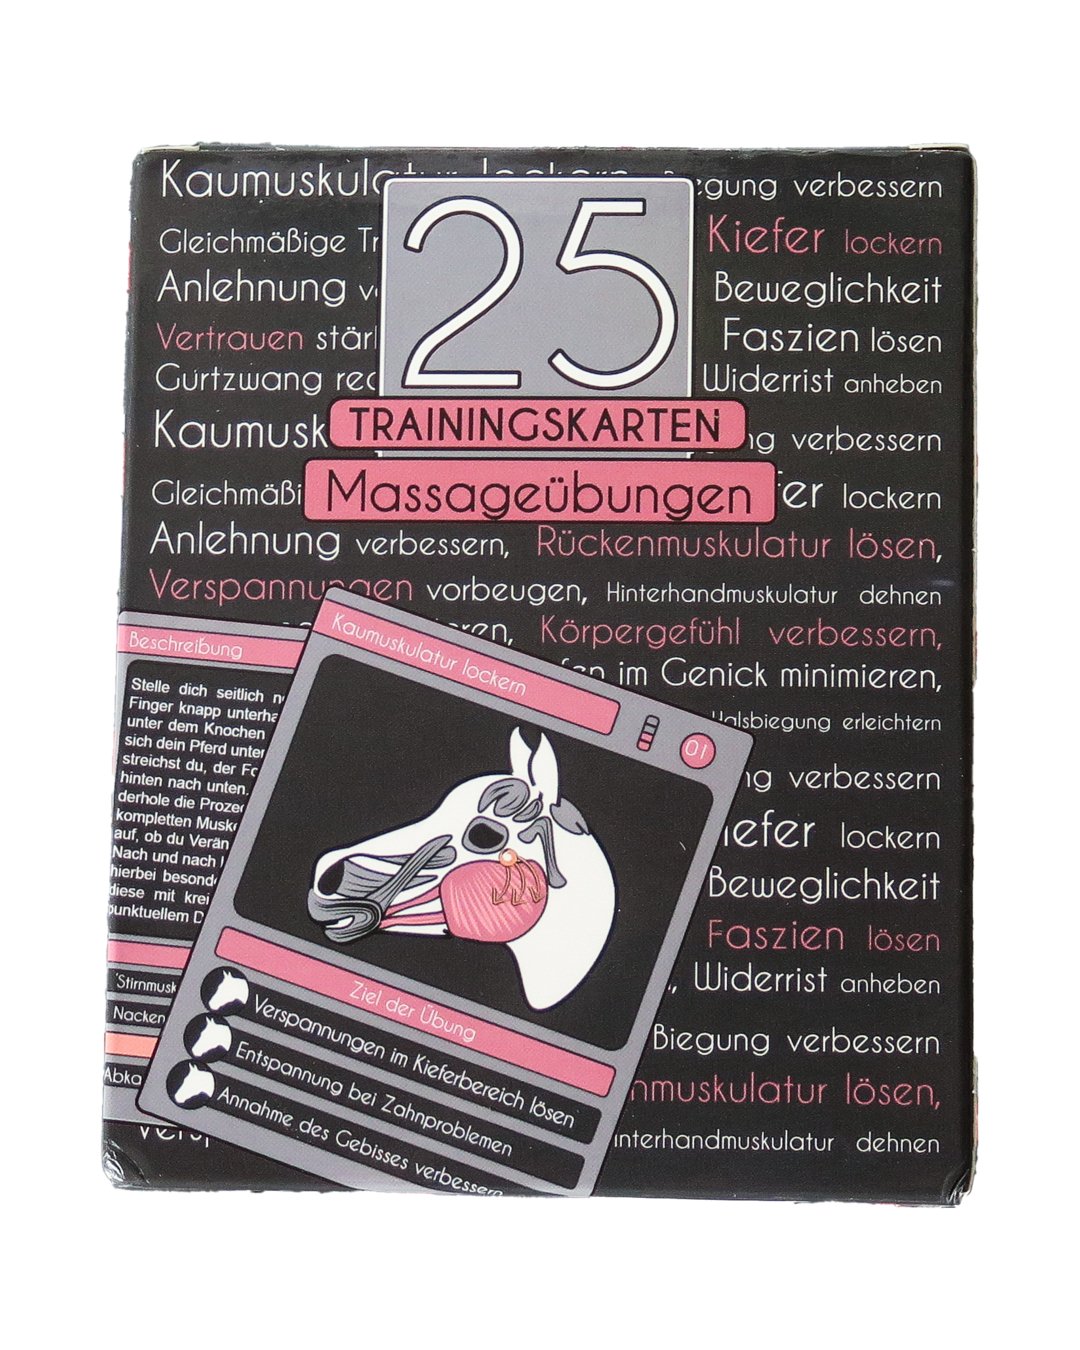 25 Trainingskarten – Massageübungen Standard Standard